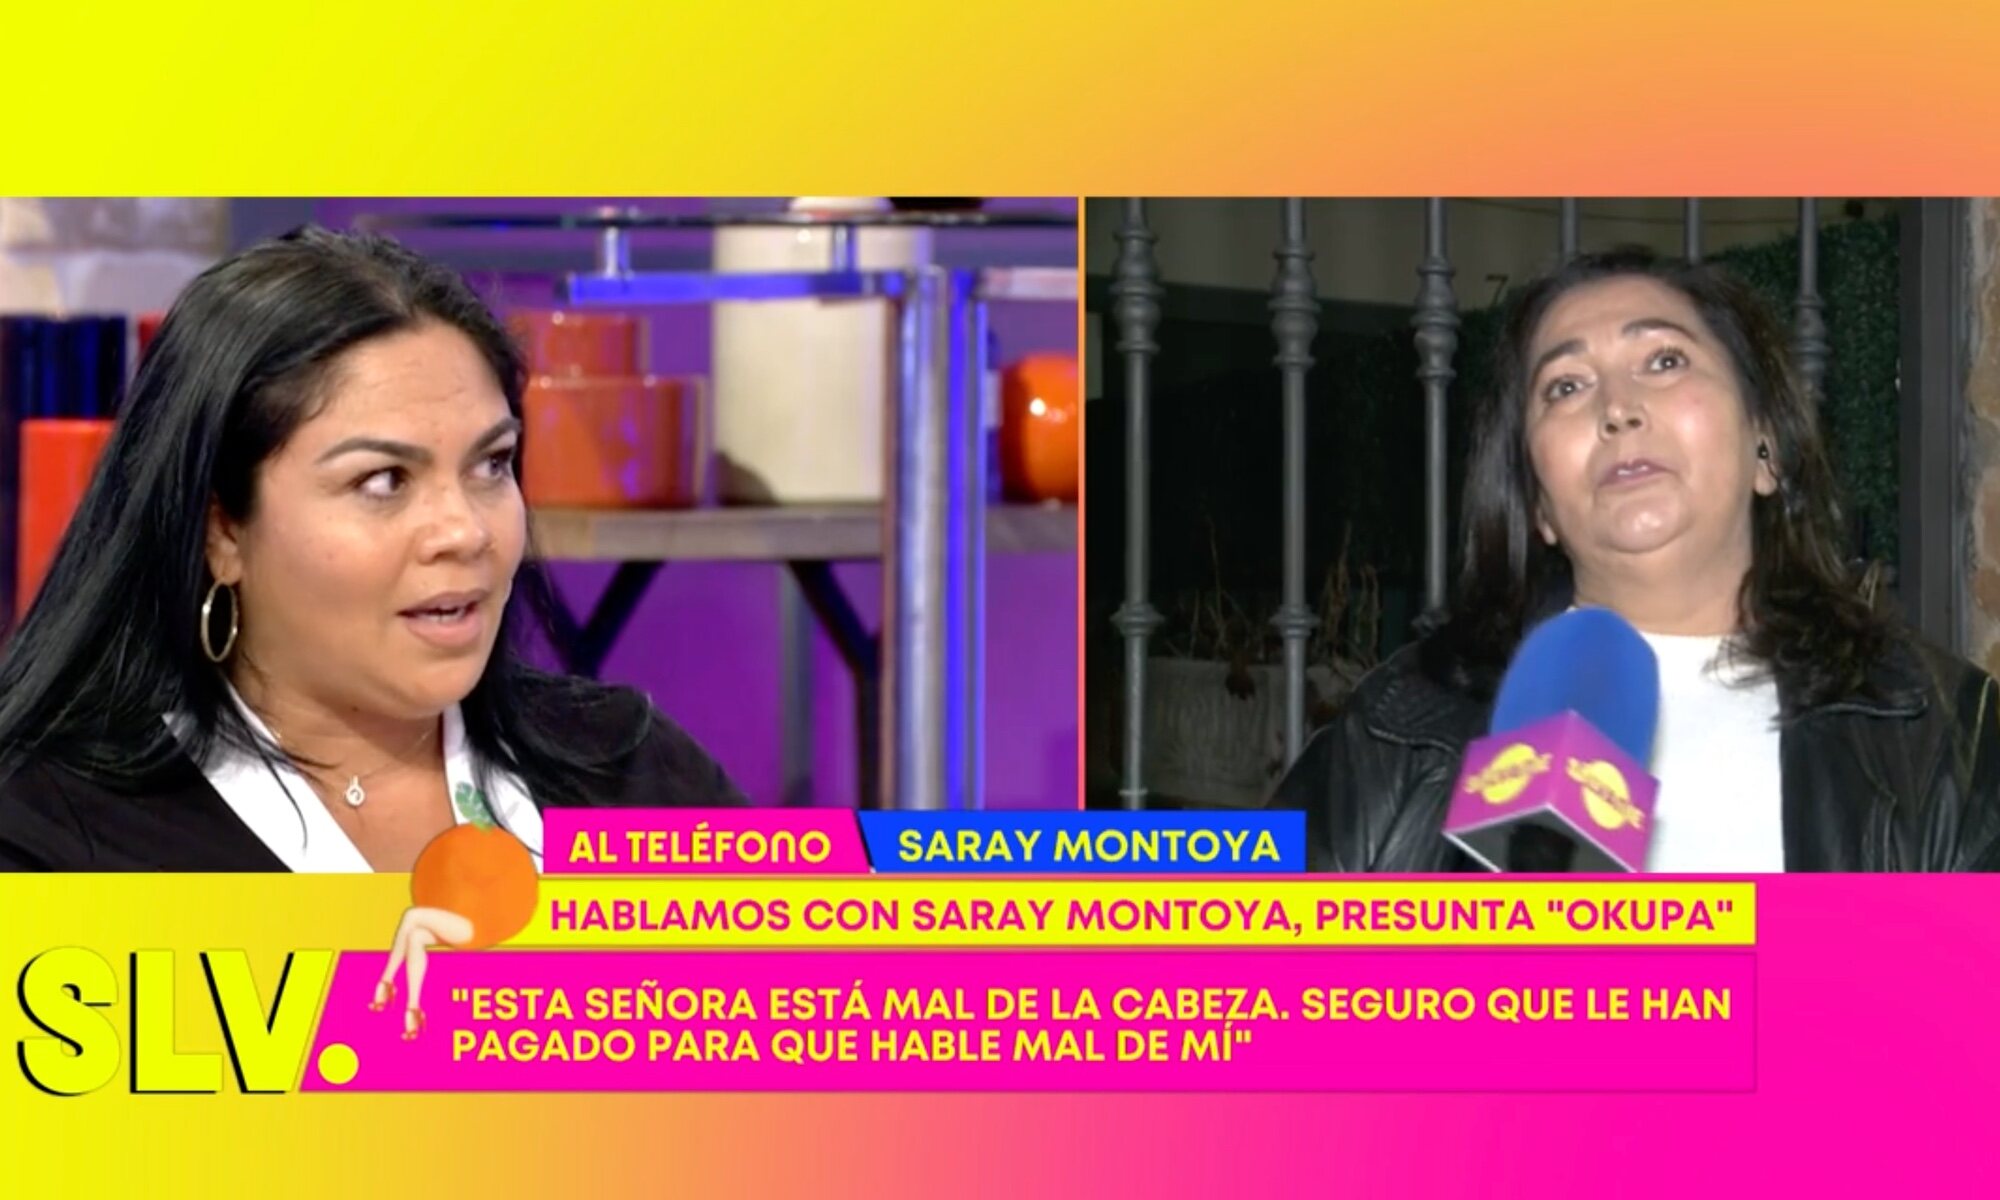 Cruce de palabras entre Saray Montoya y María Ángeles en 'Sálvame'